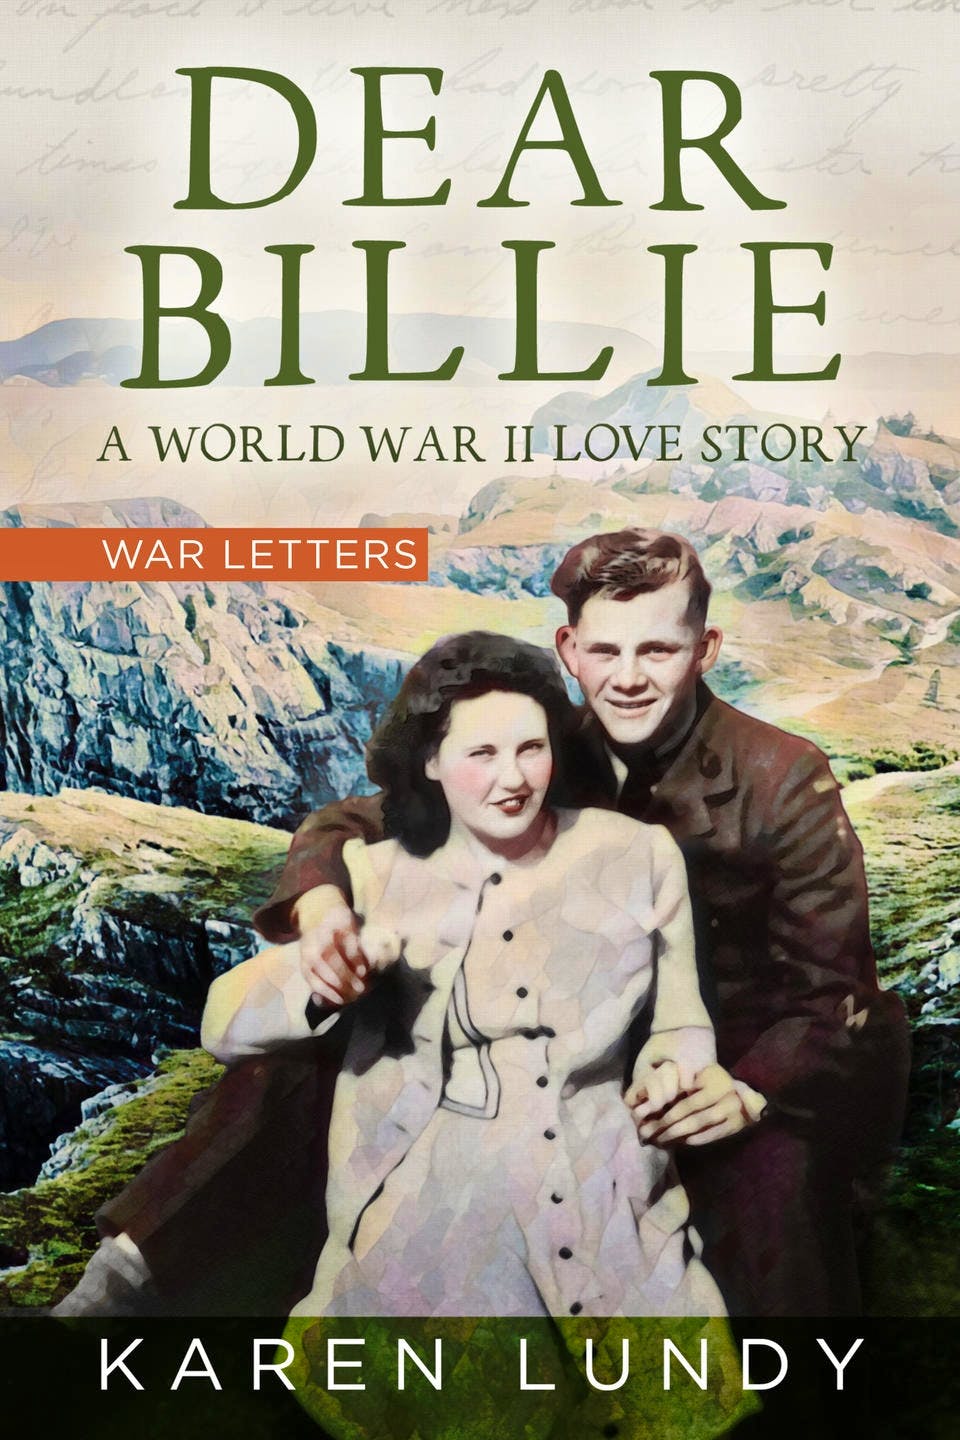 Karen Lundy's new book, "Dear Billie: A World War II Love Story."